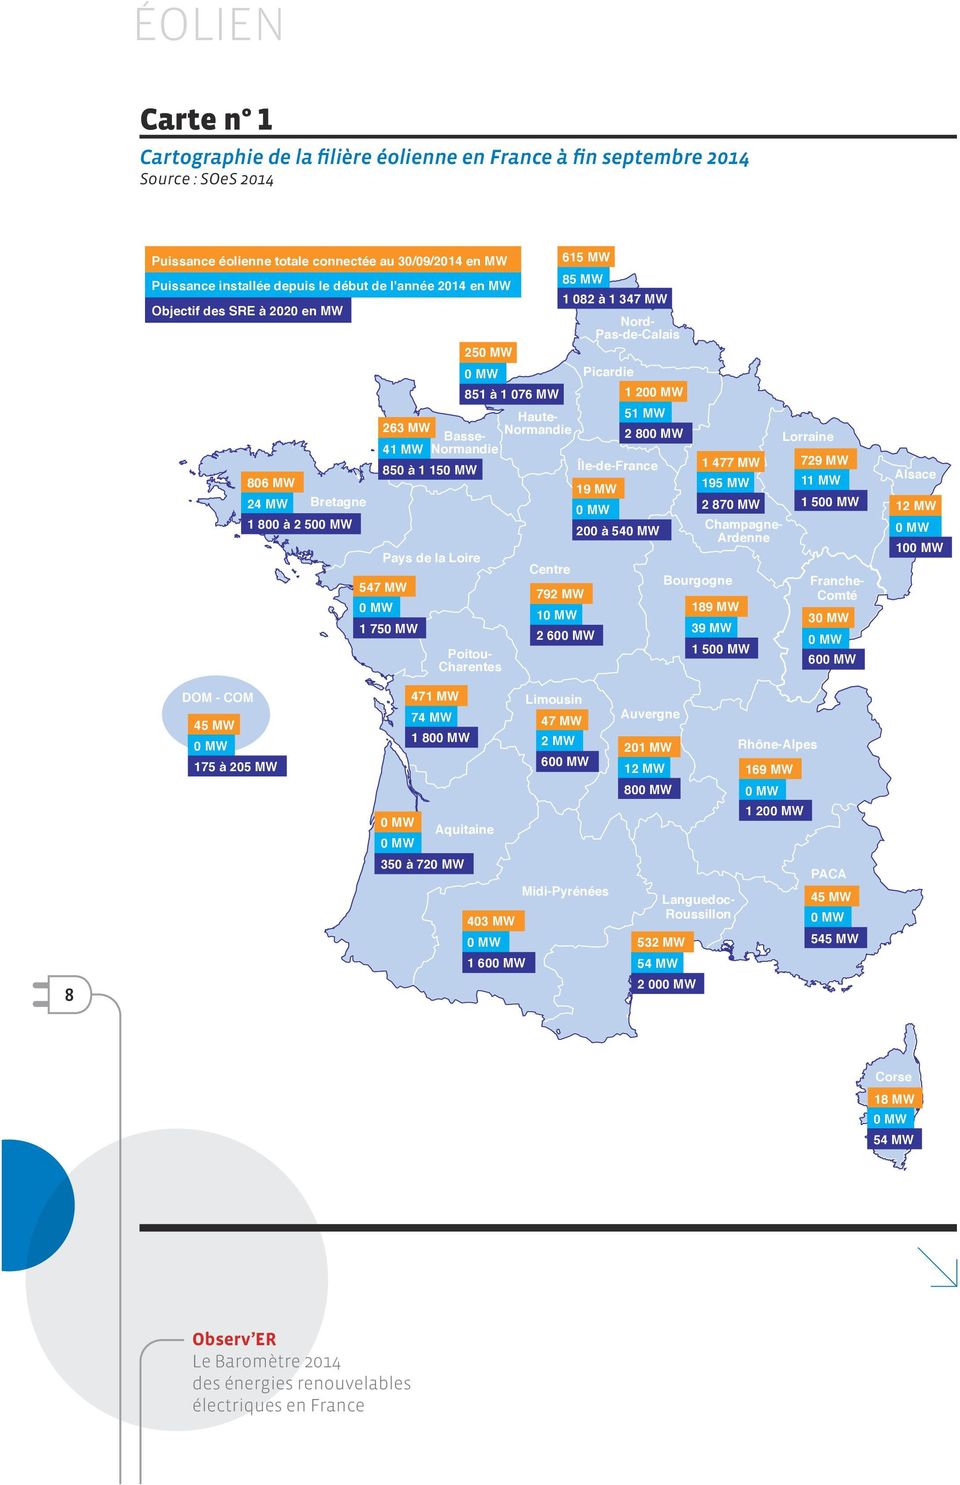 MW Île-de-France Pays de la Loire 547 MW 0 MW 1 750 MW 250 MW Poitou- Charentes Centre 792 MW 10 MW 615 MW 85 MW 1 082 à 1 347 MW Nord- Pas-de-Calais 19 MW 0 MW 2 600 MW 200 à 540 MW 1 477 MW 195 MW